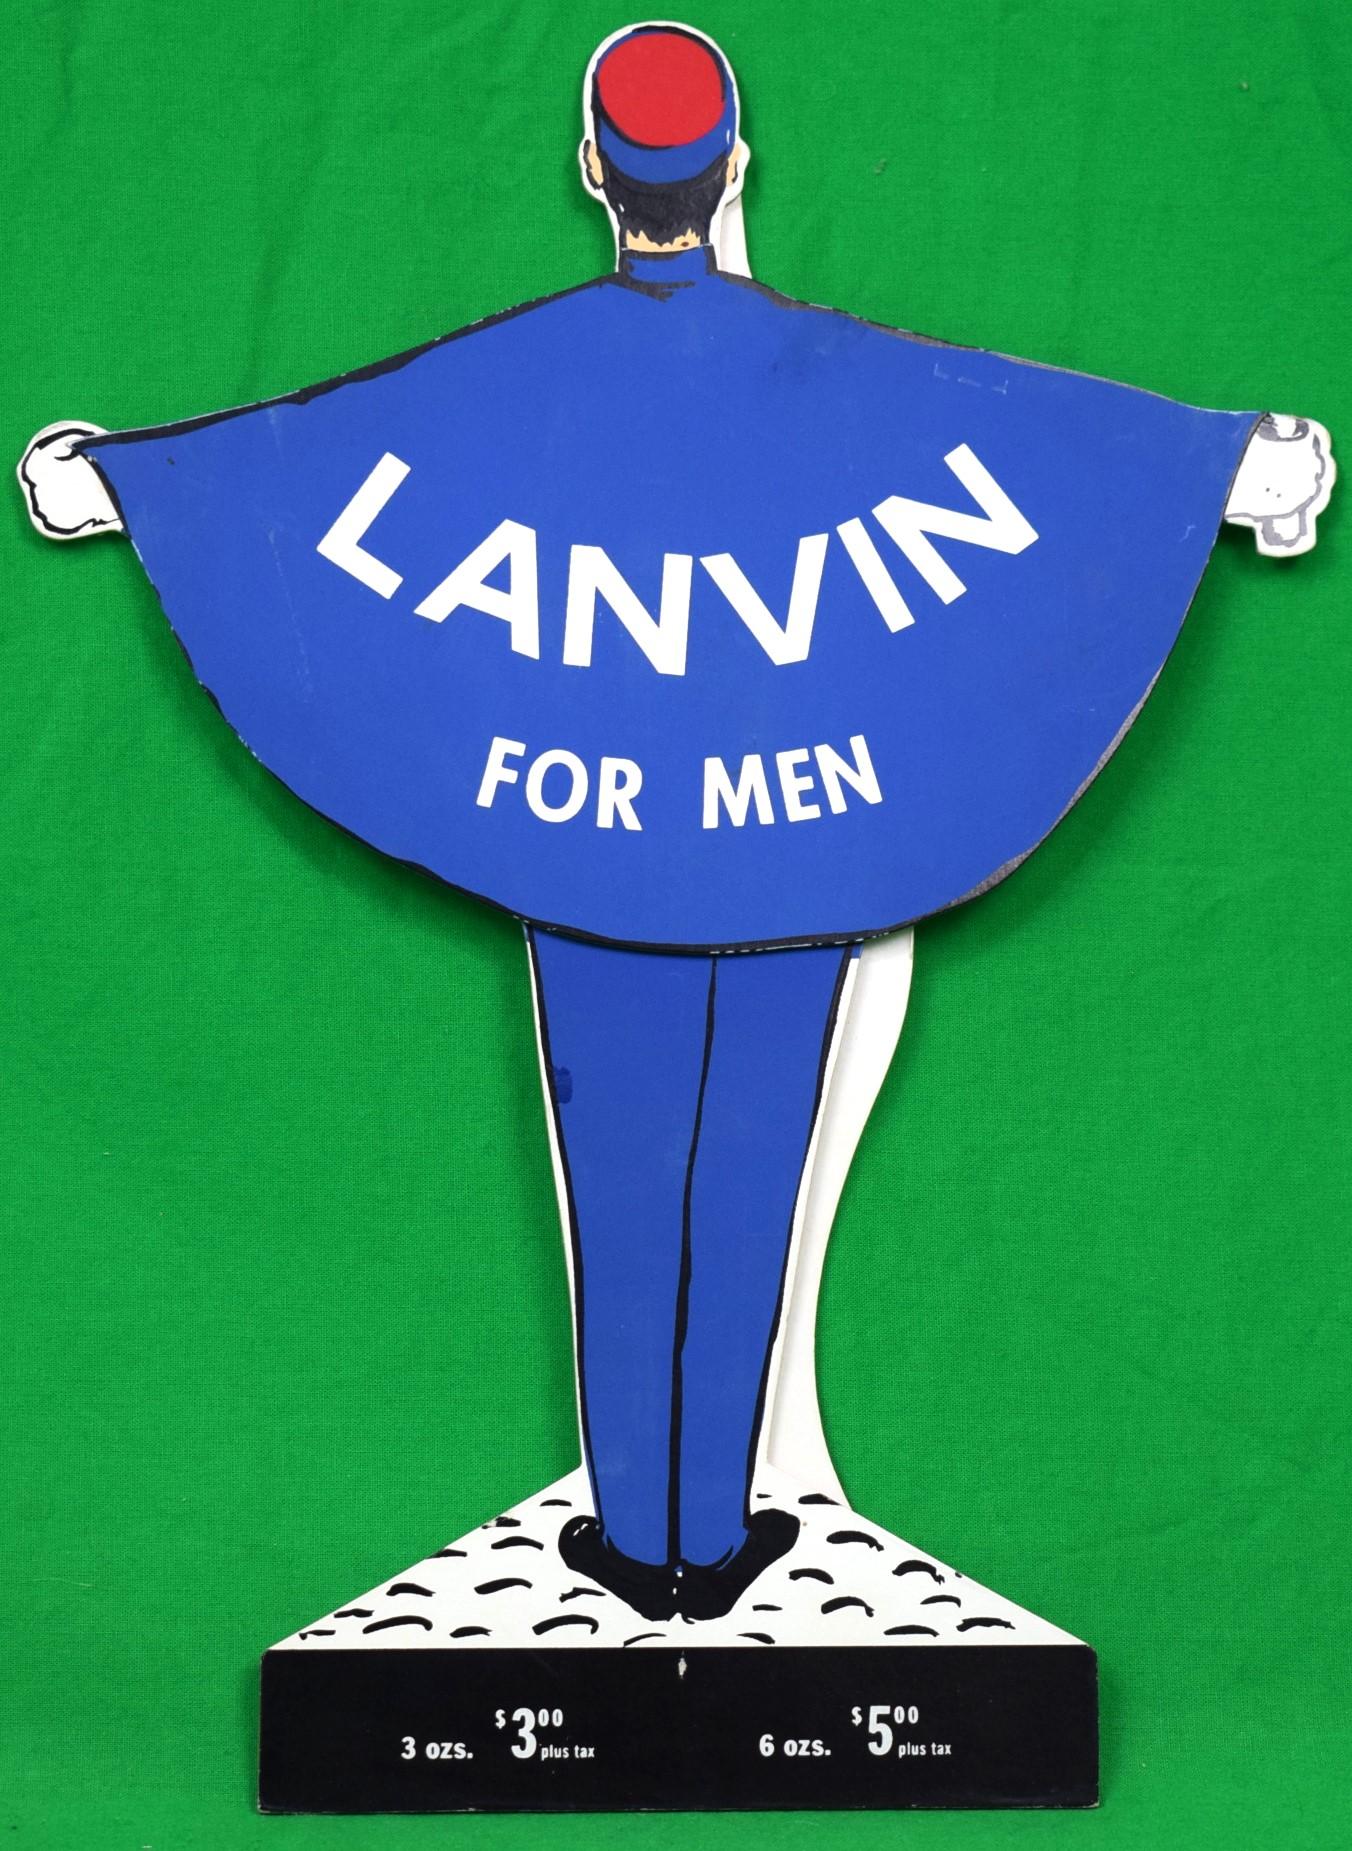 "Lanvin Paris For Men Cologne c1950s 3-D Advert Sign" - Art by Alexander Warren Montel